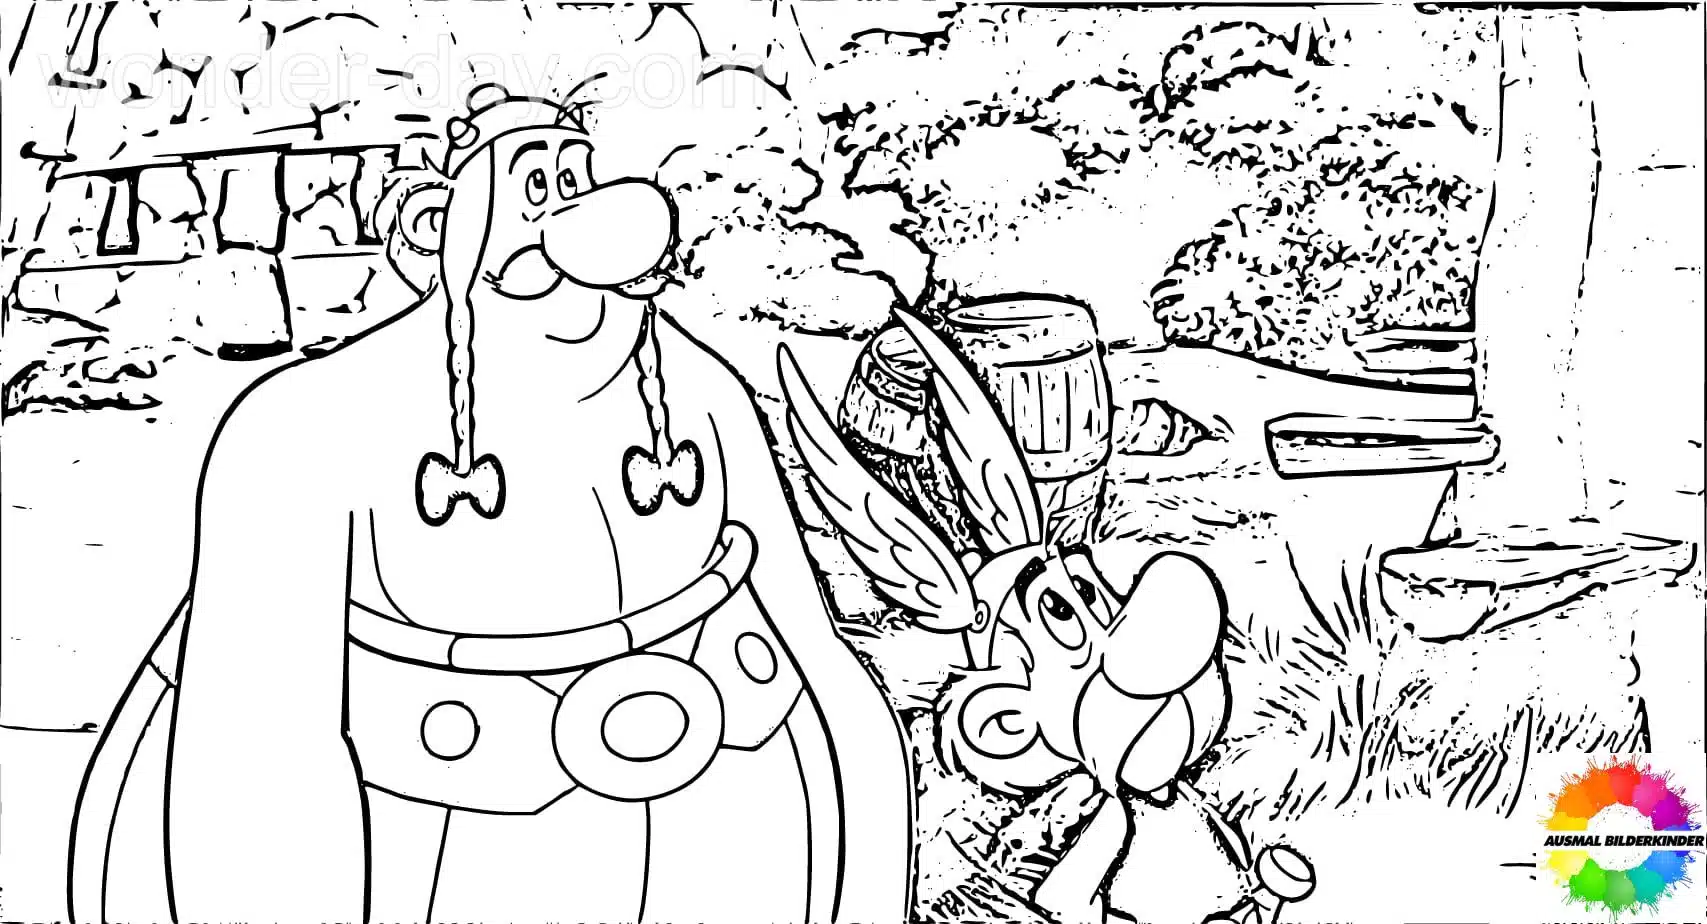 Asterix and Obelix 8